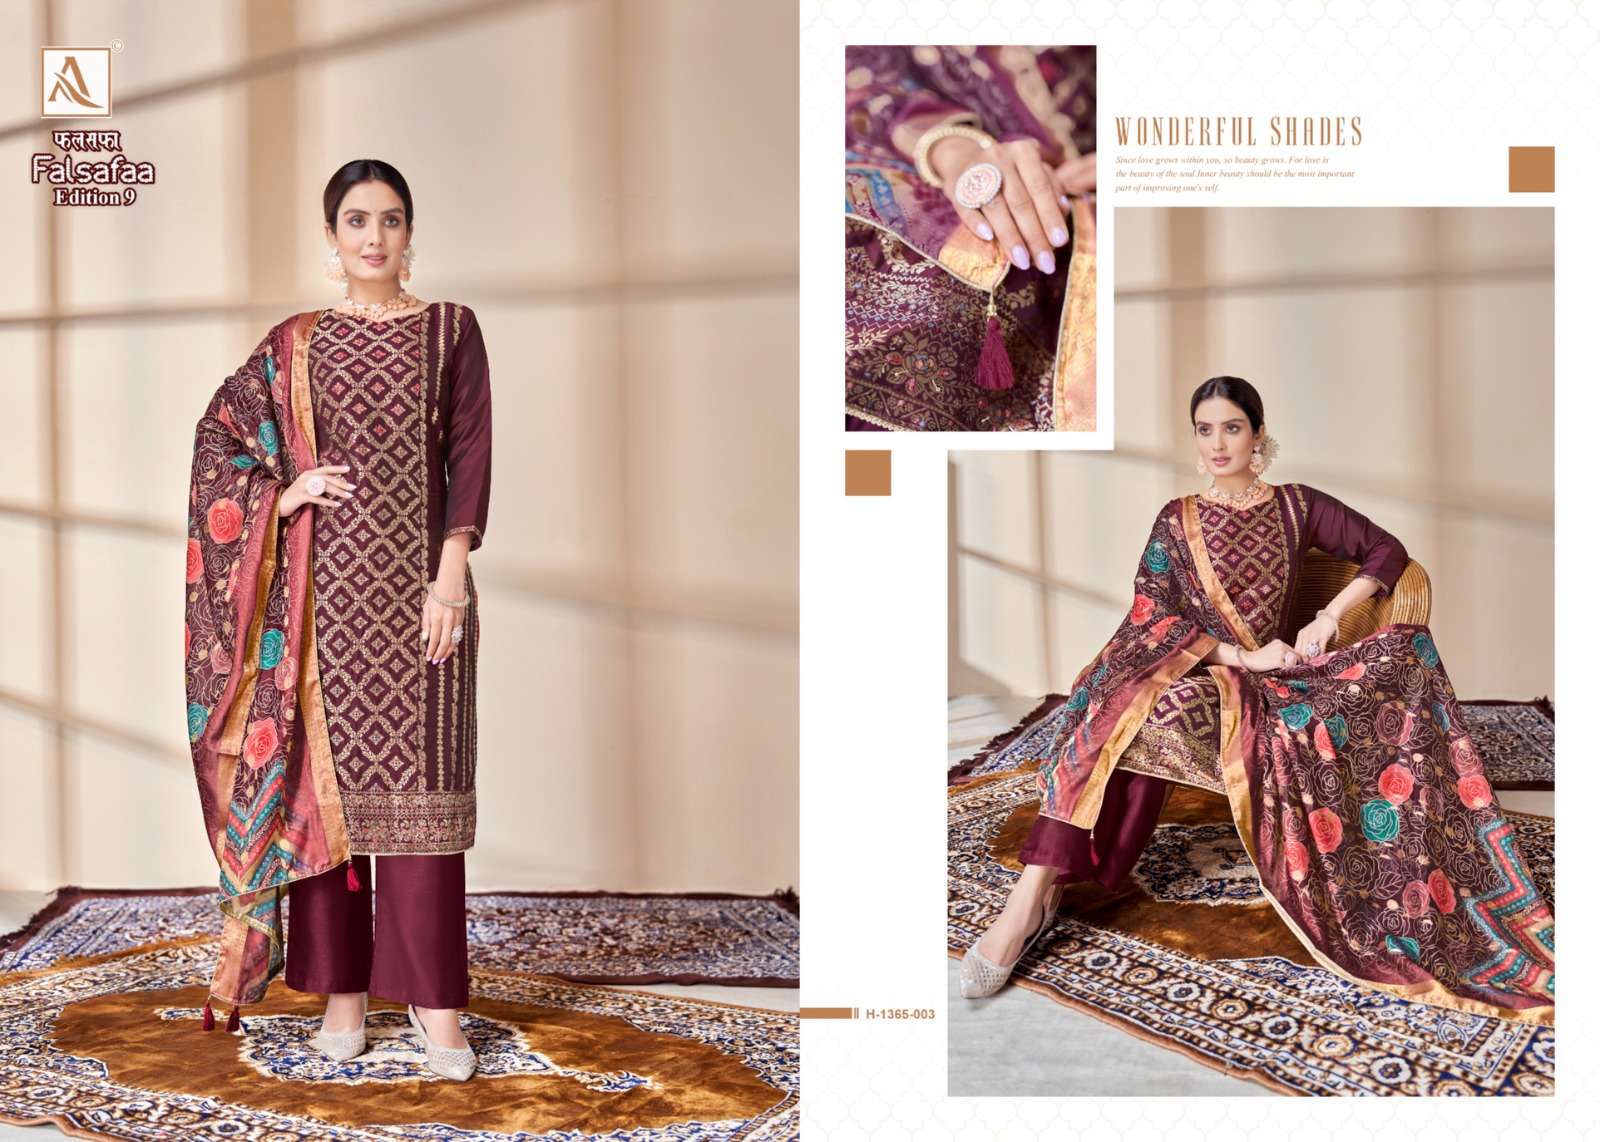 alok suit falsafaa vol-9 1365-001-006 series designer pakistani salwar kameez wholesaler surat gujarat